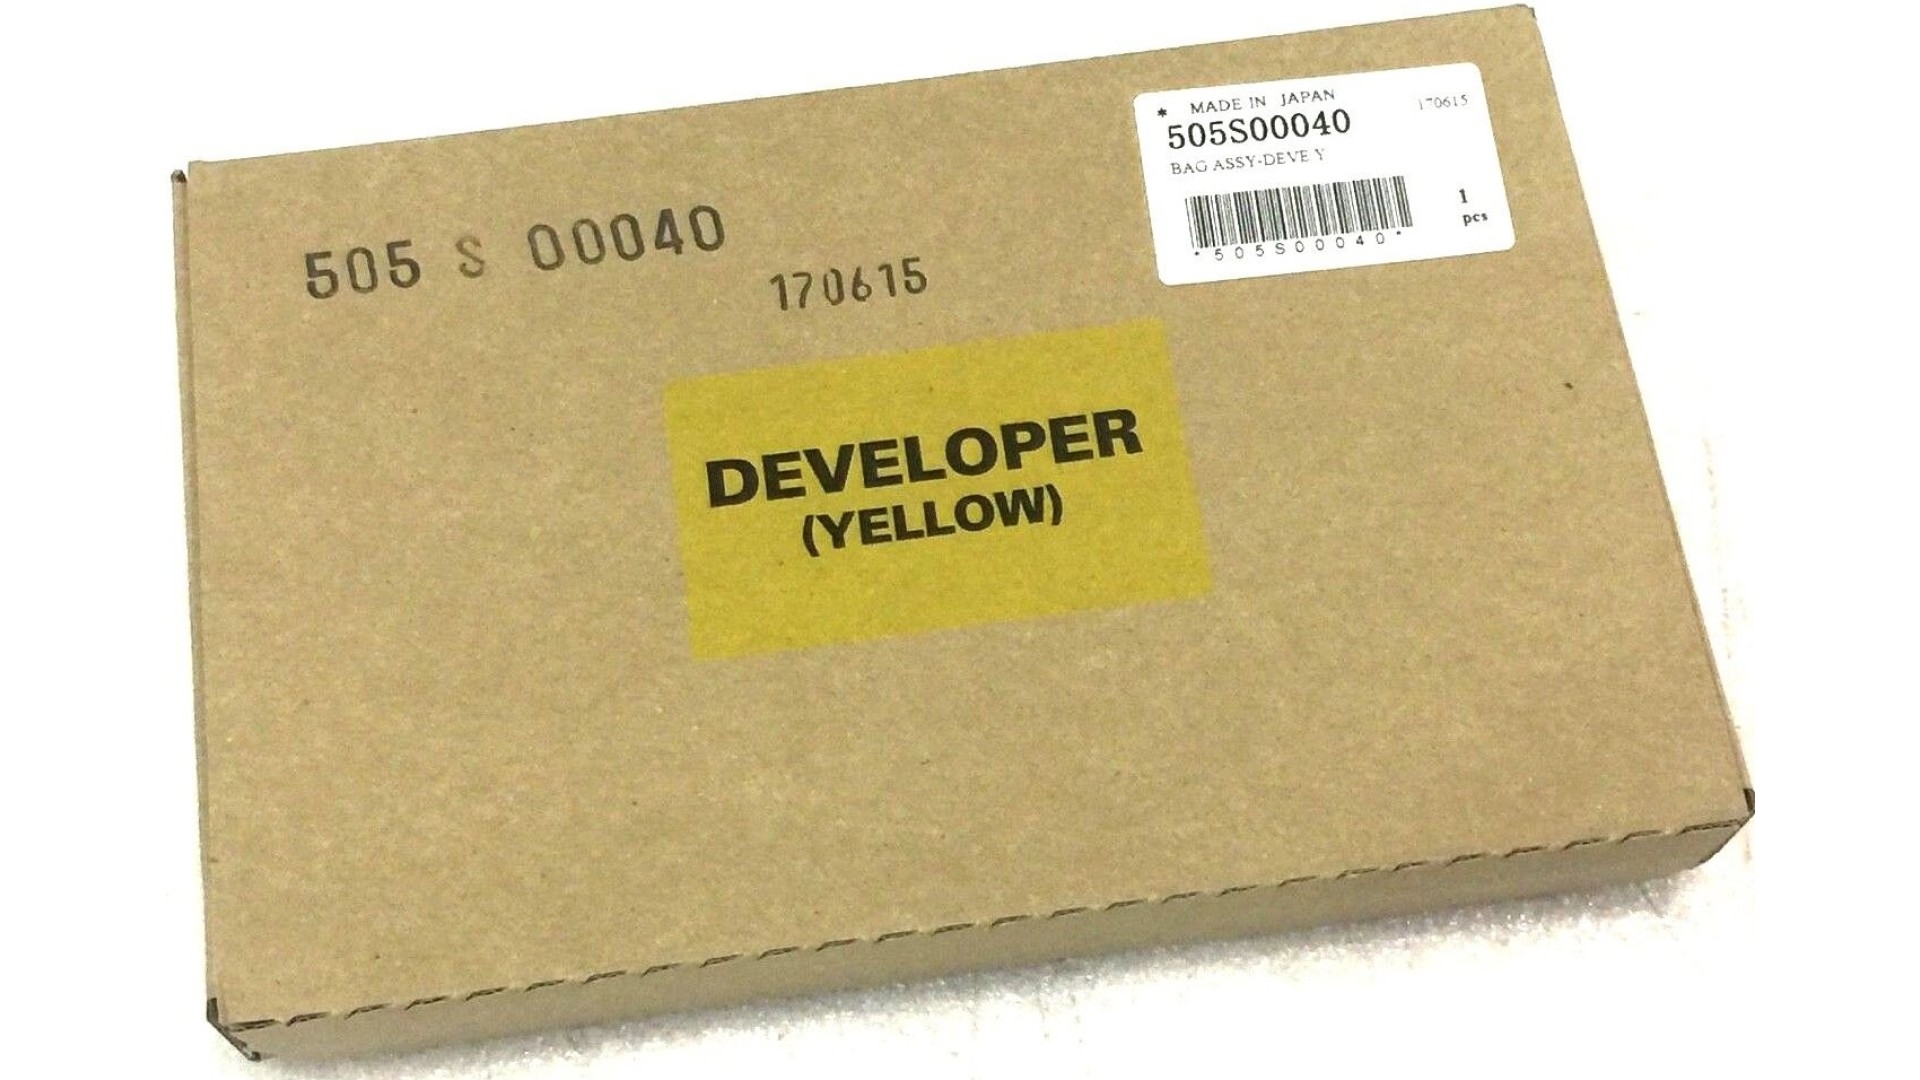 კარტრიჯი Xerox  505S00040 Developer Yellow For versant 80 180 2100 3100